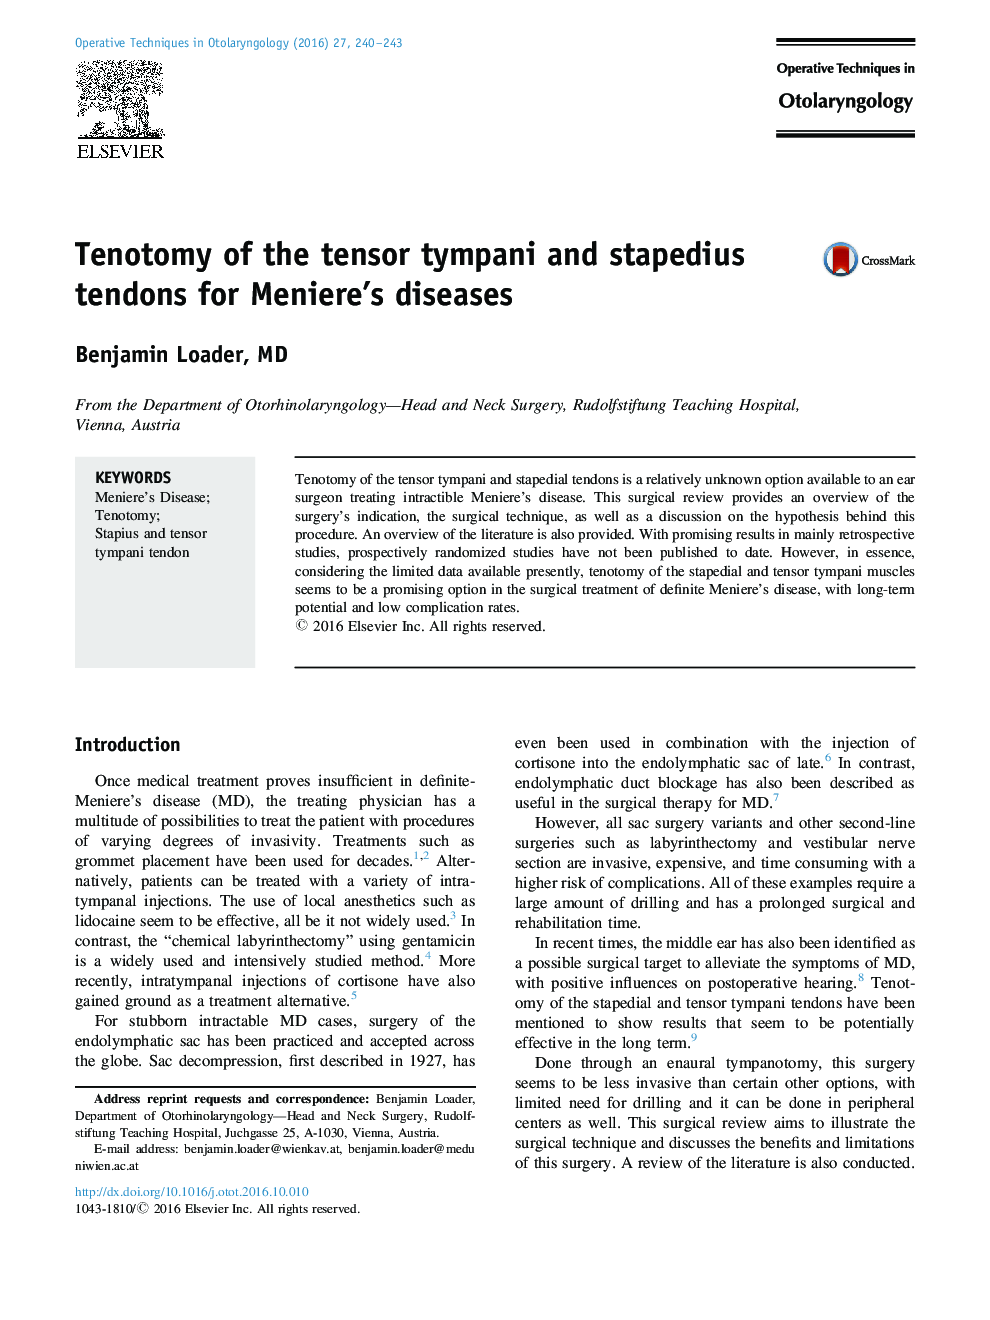 تنوتومی تنگی تامپانی و تاندون استپدیوس برای بیماری های منیر 